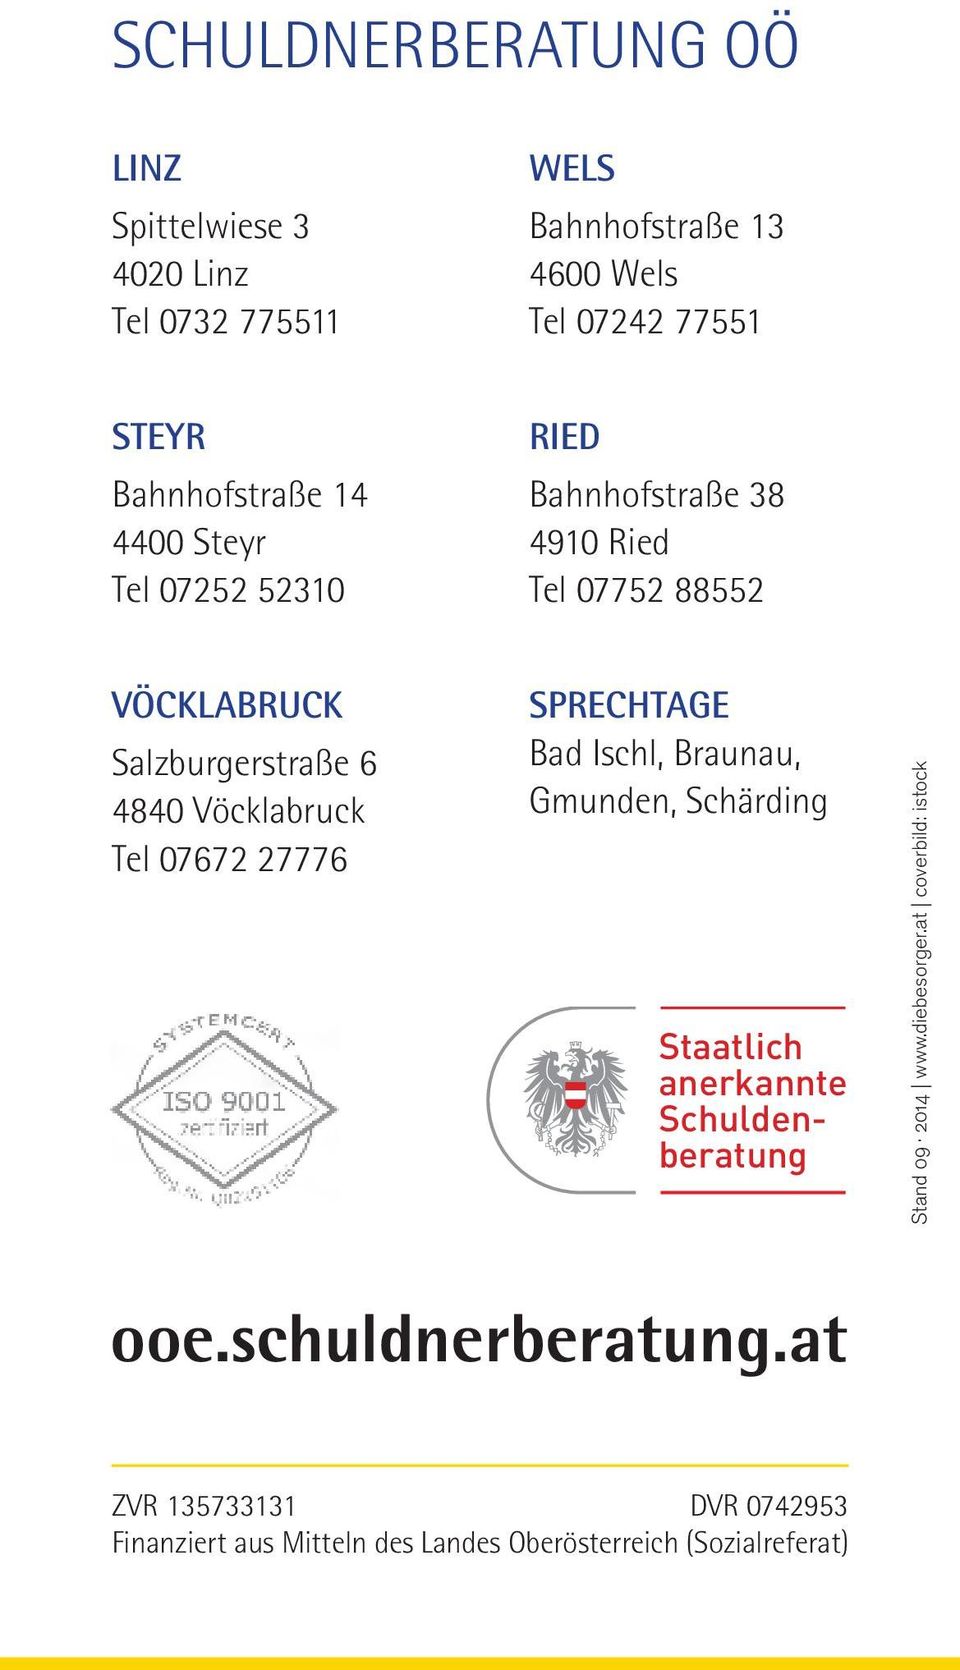 Vöcklabruck Tel 07672 27776 SPRECHTAGE Bad Ischl, Braunau, Gmunden, Schärding Staatlich anerkannte Schuldenberatung Stand 09 2014